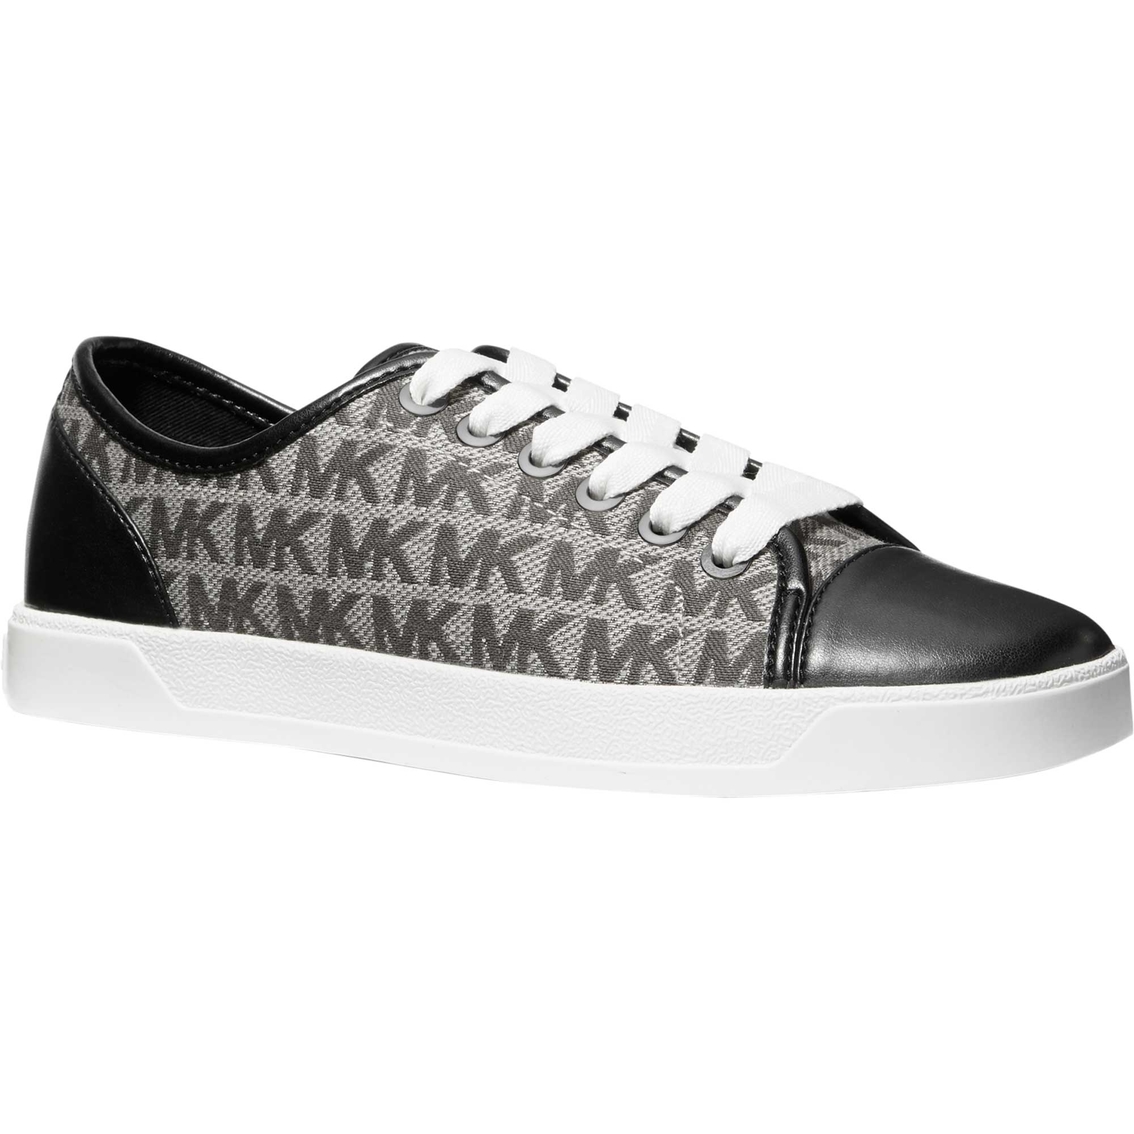 sneakers mk